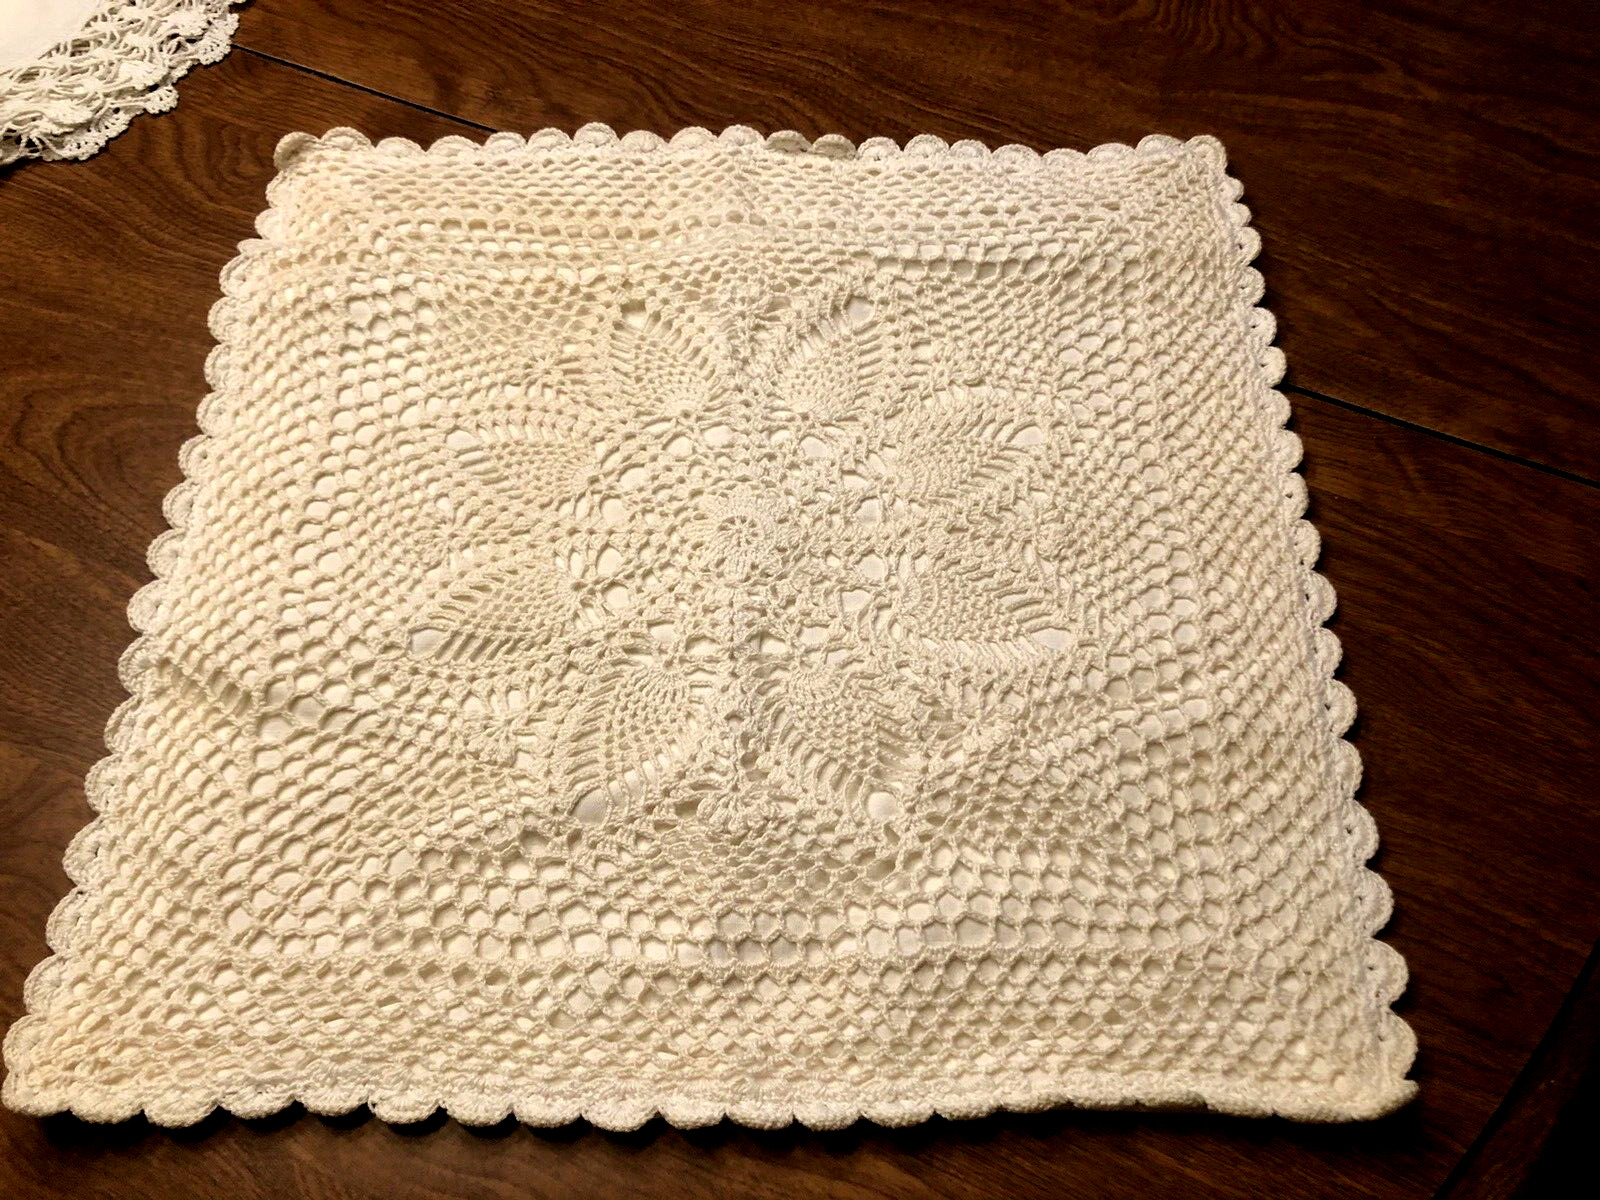 Vintage  Hand Crochet  Pillow Cover   Pineapple Design